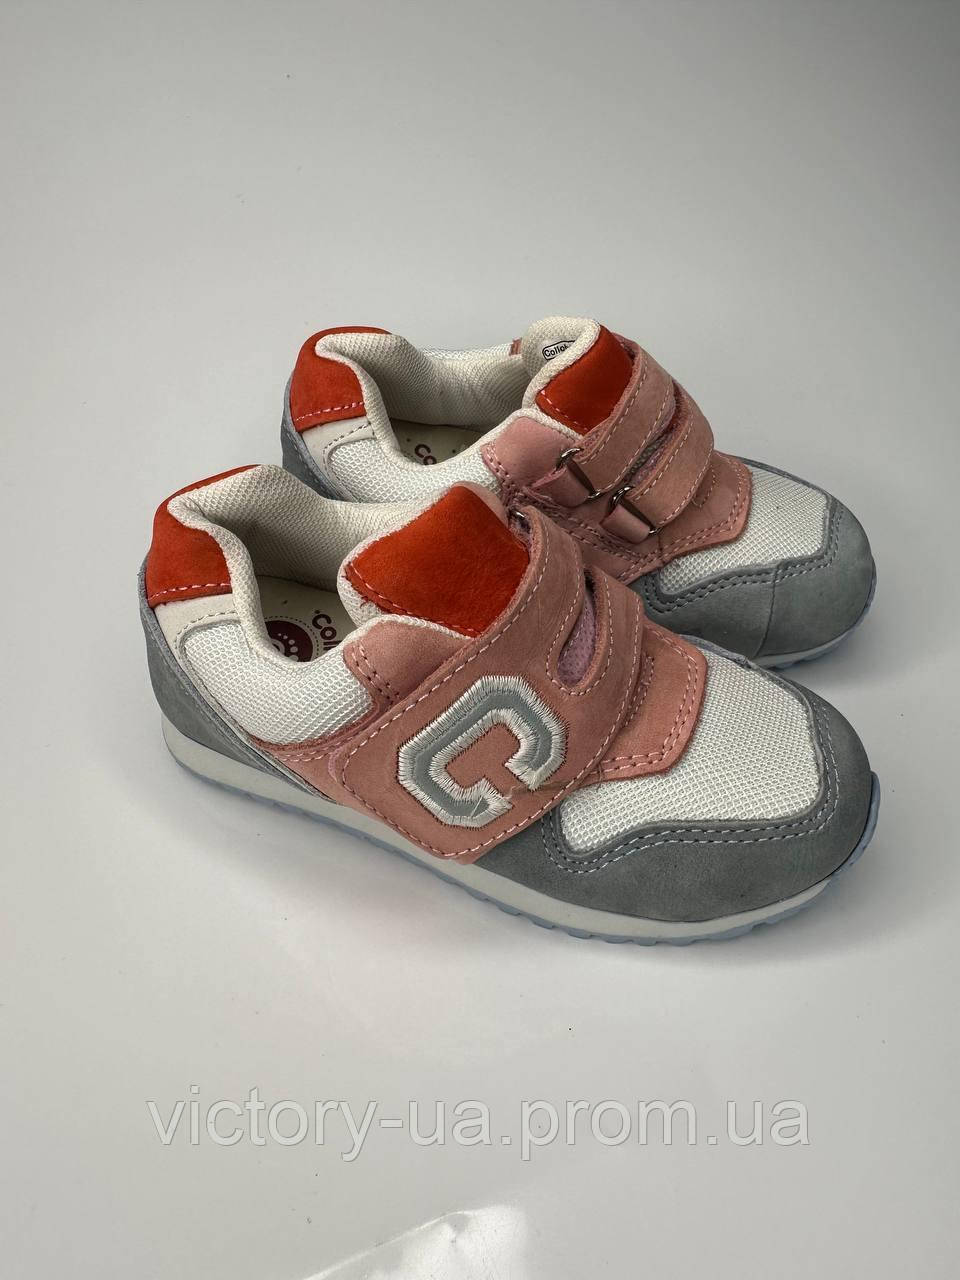 Дитячі кросівки для дівчинки фірми Colloky,розмір 27 (18 см)